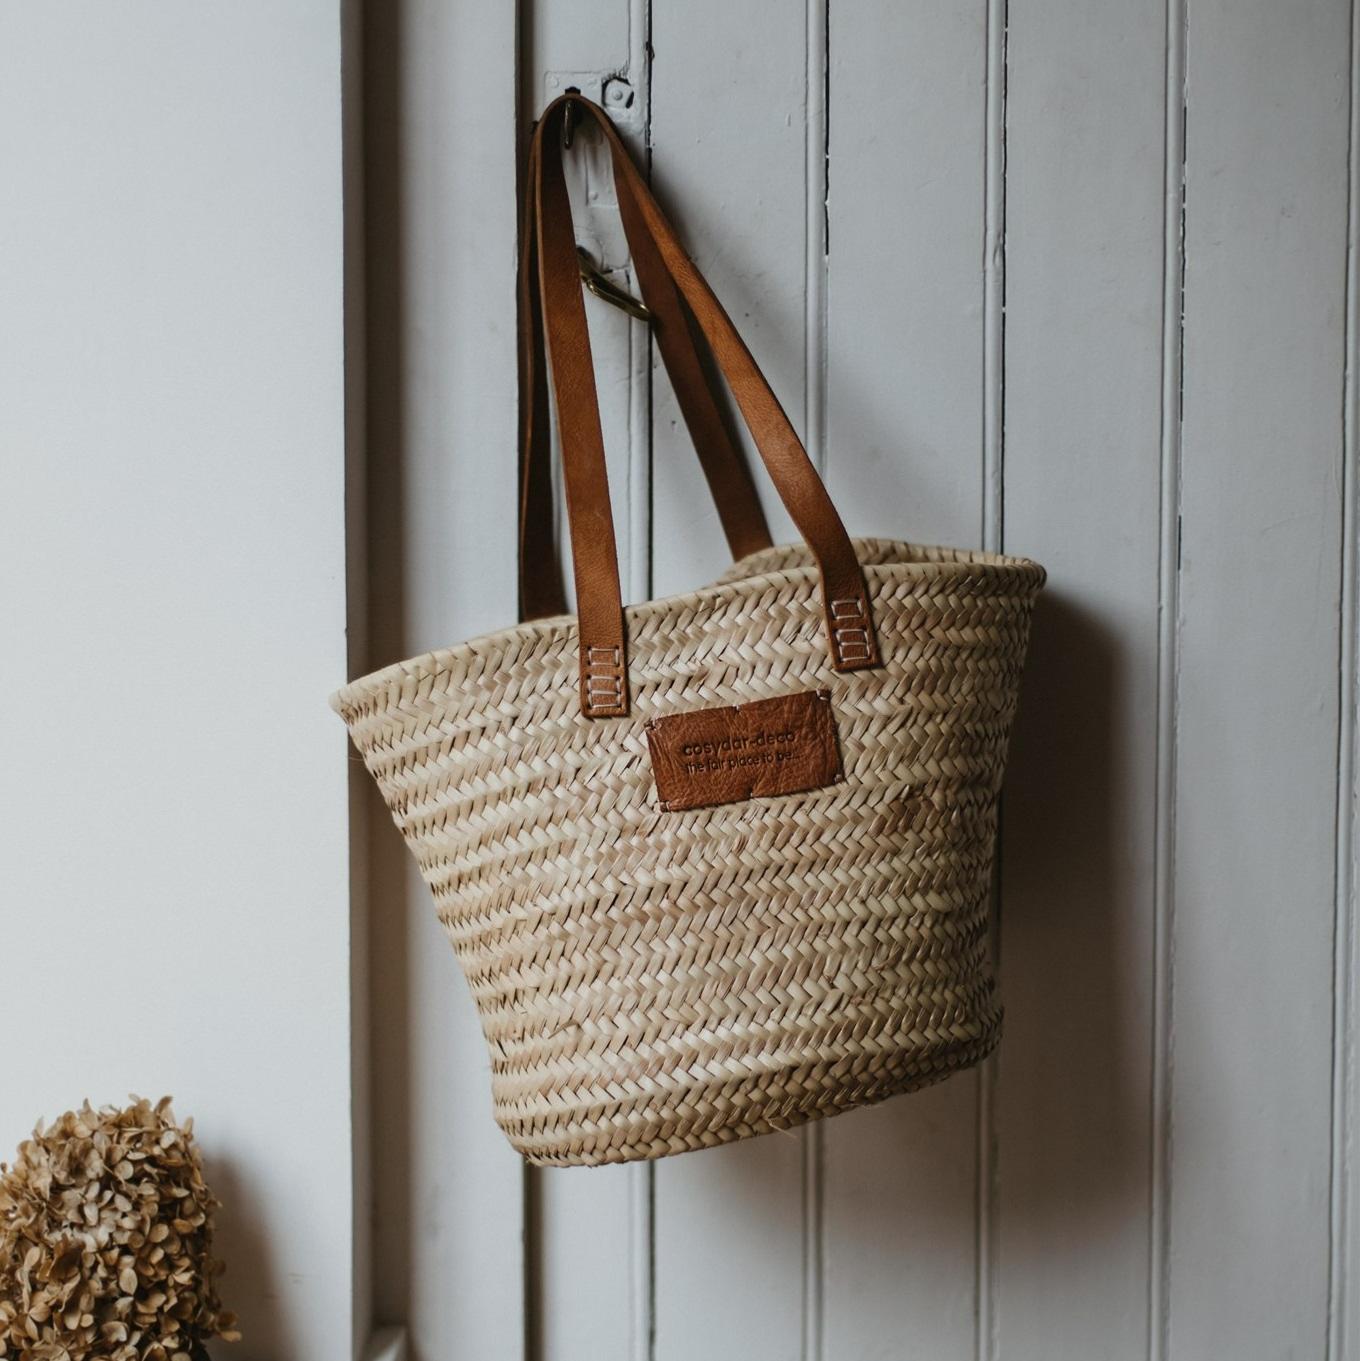 Basket - Wicker & Leather, L